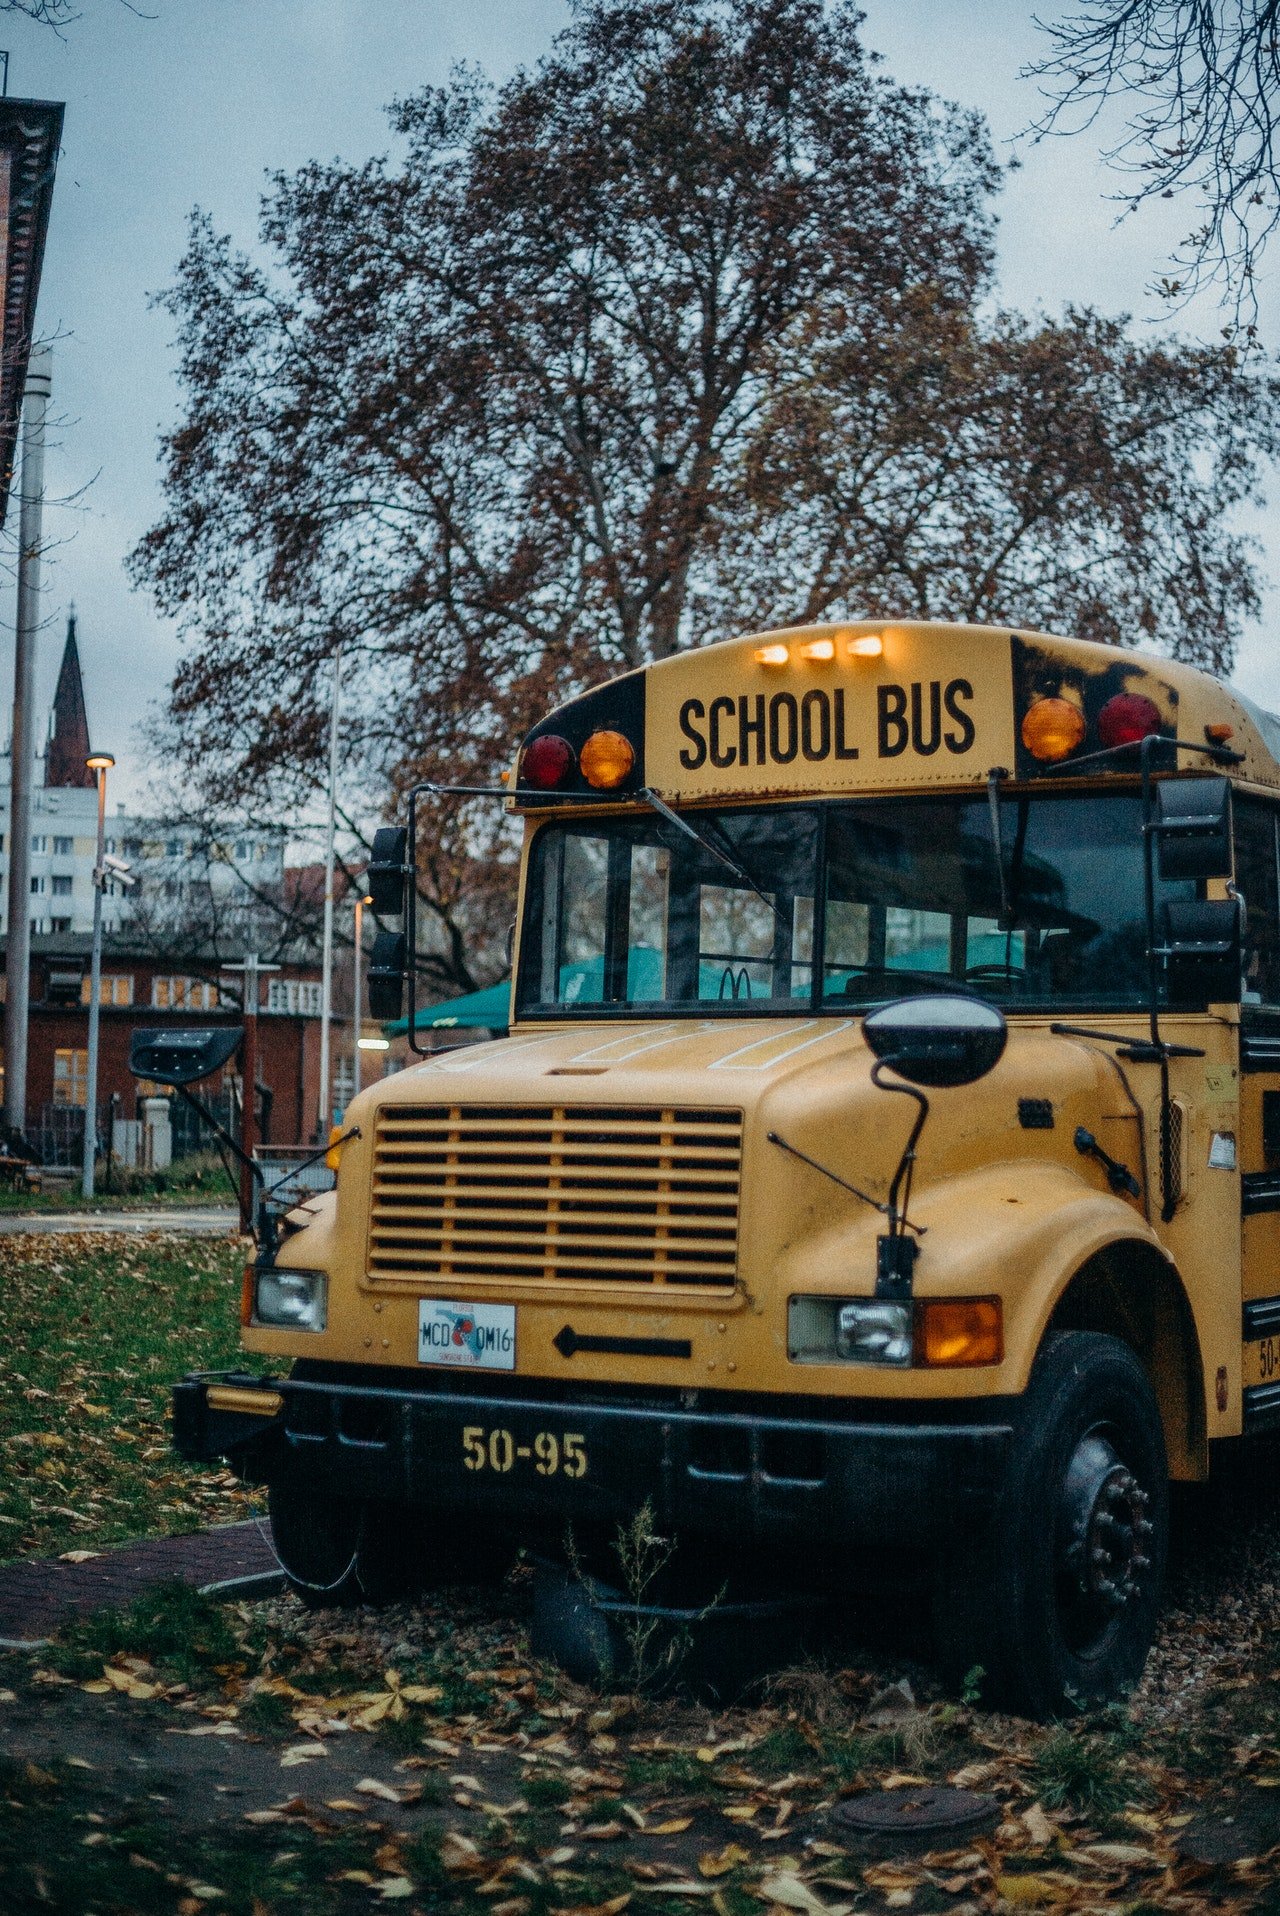 Ein weiterer Schulbus kam an und Lynn war verwirrt. | Quelle: Pexels